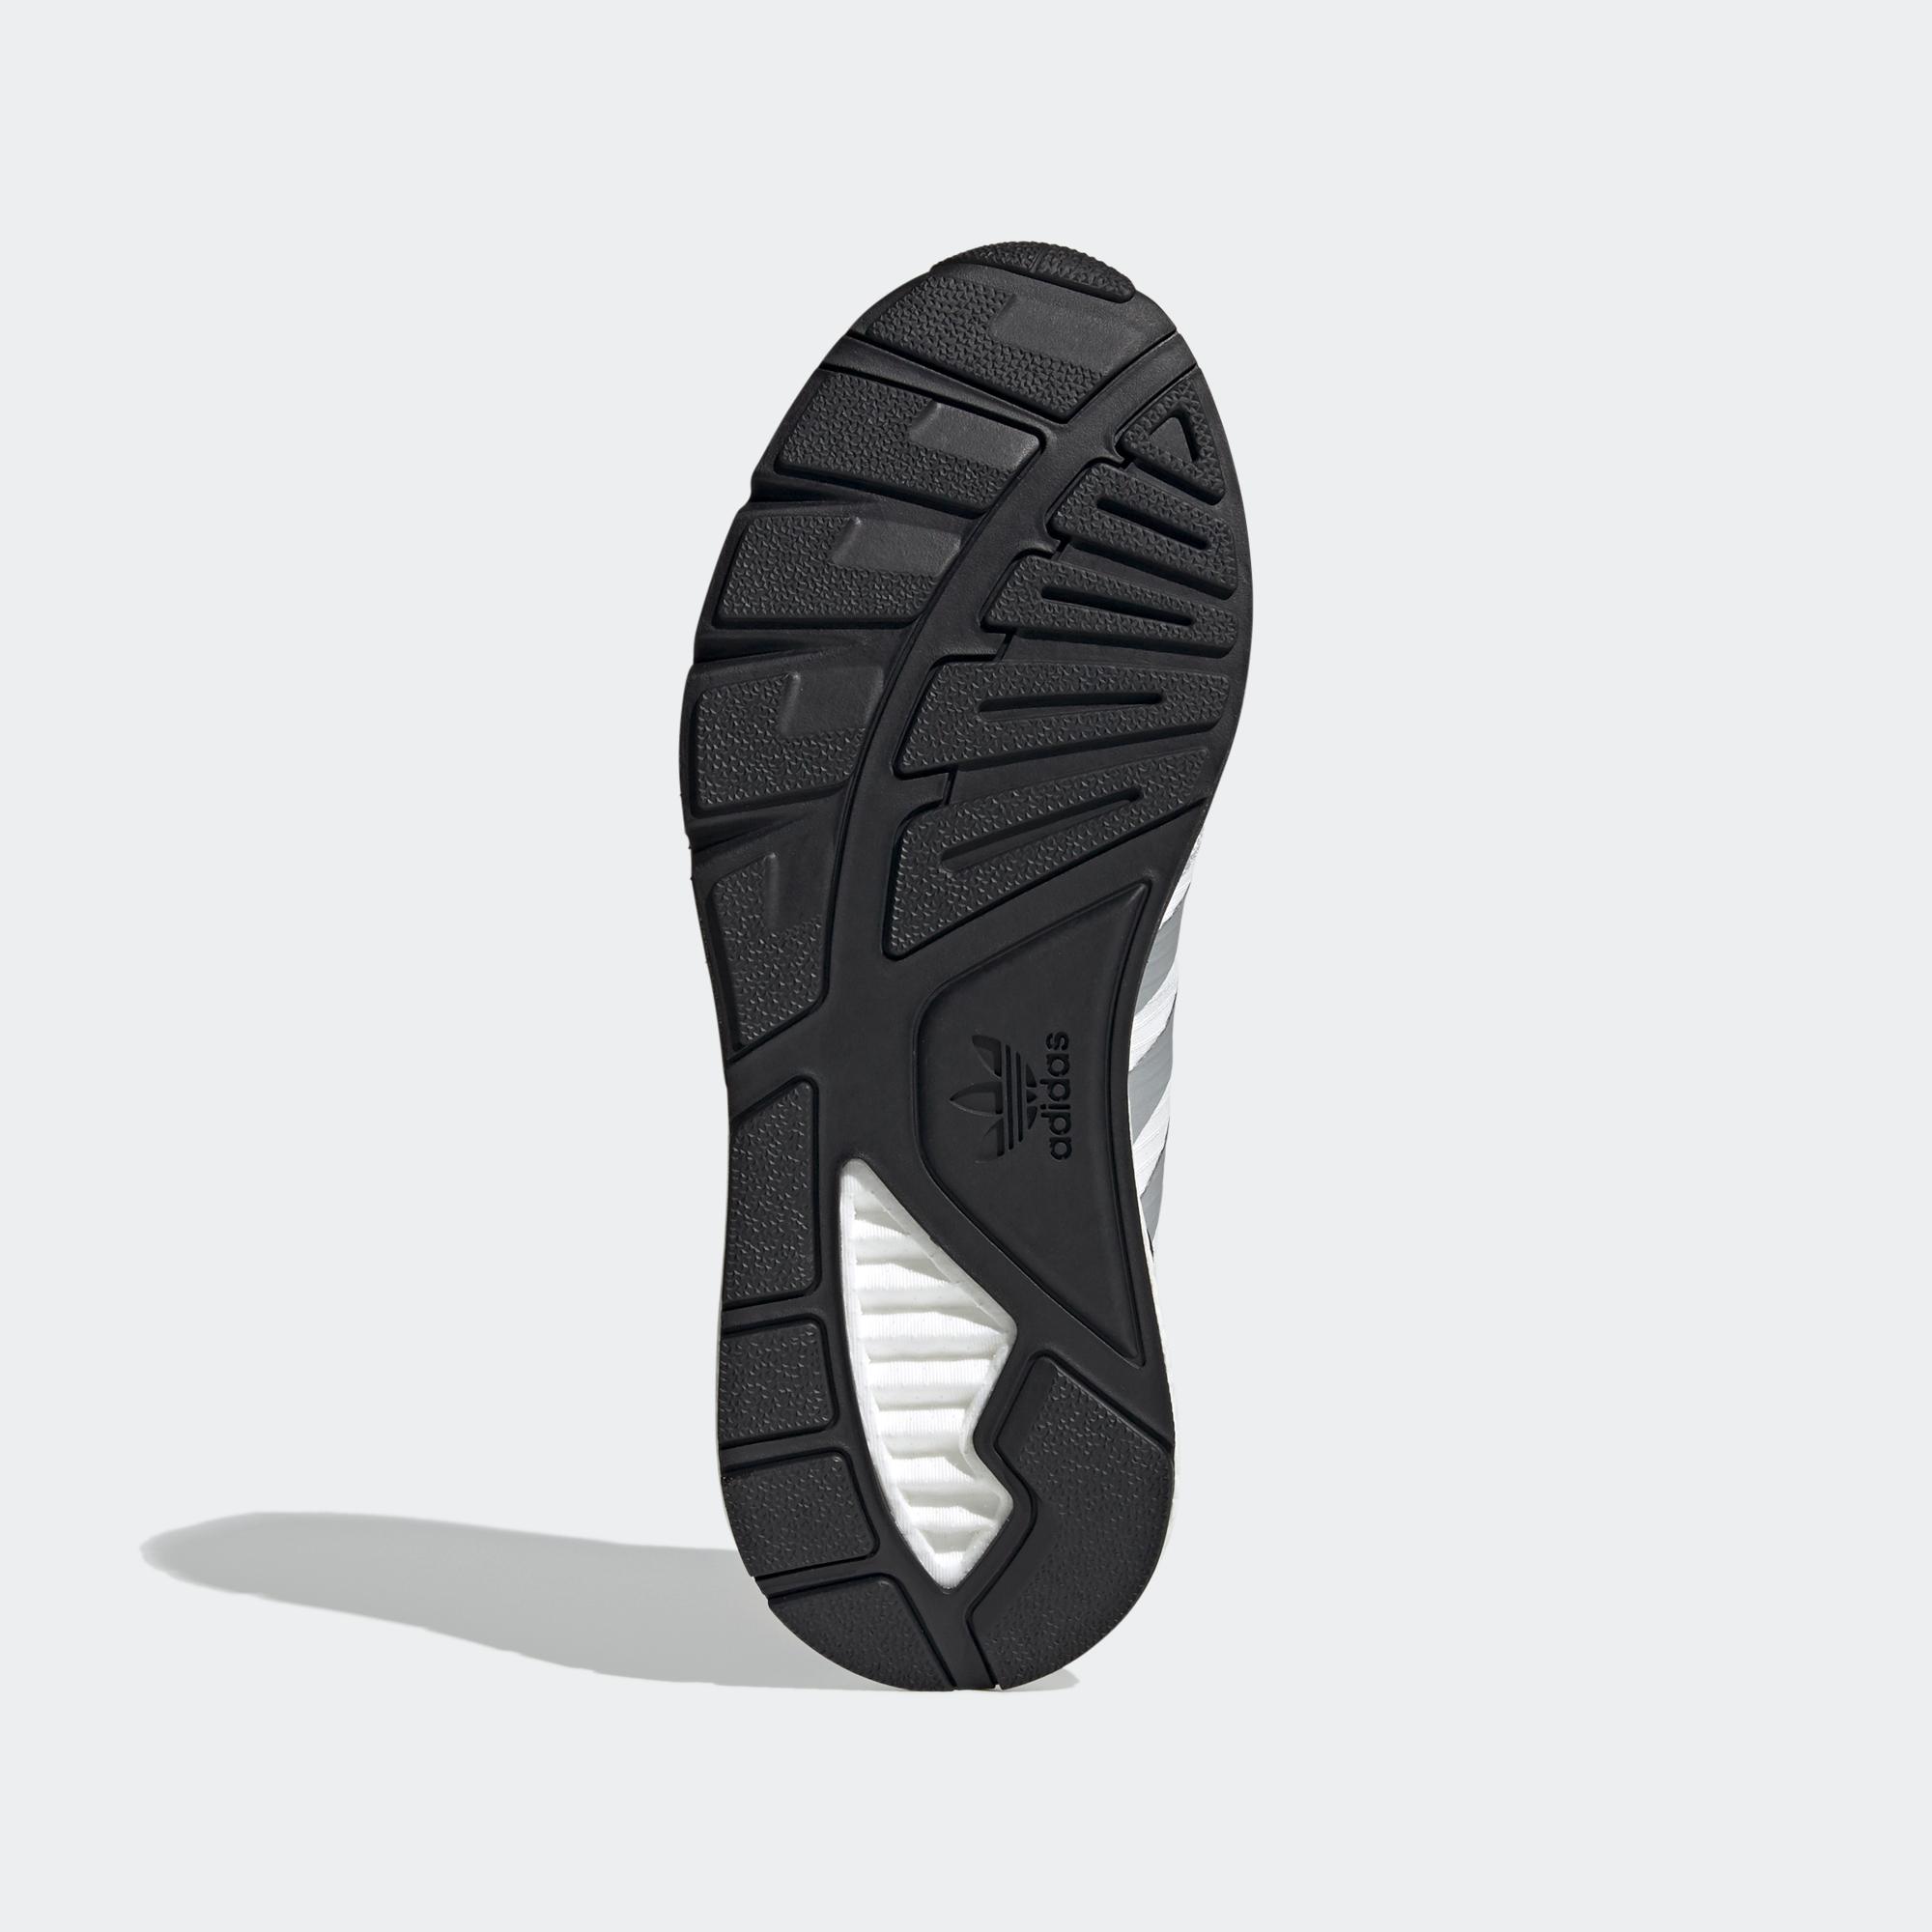 ZX 1K BOOST 運動鞋- 白色| 男子| adidas(愛迪達)香港官方網上商店